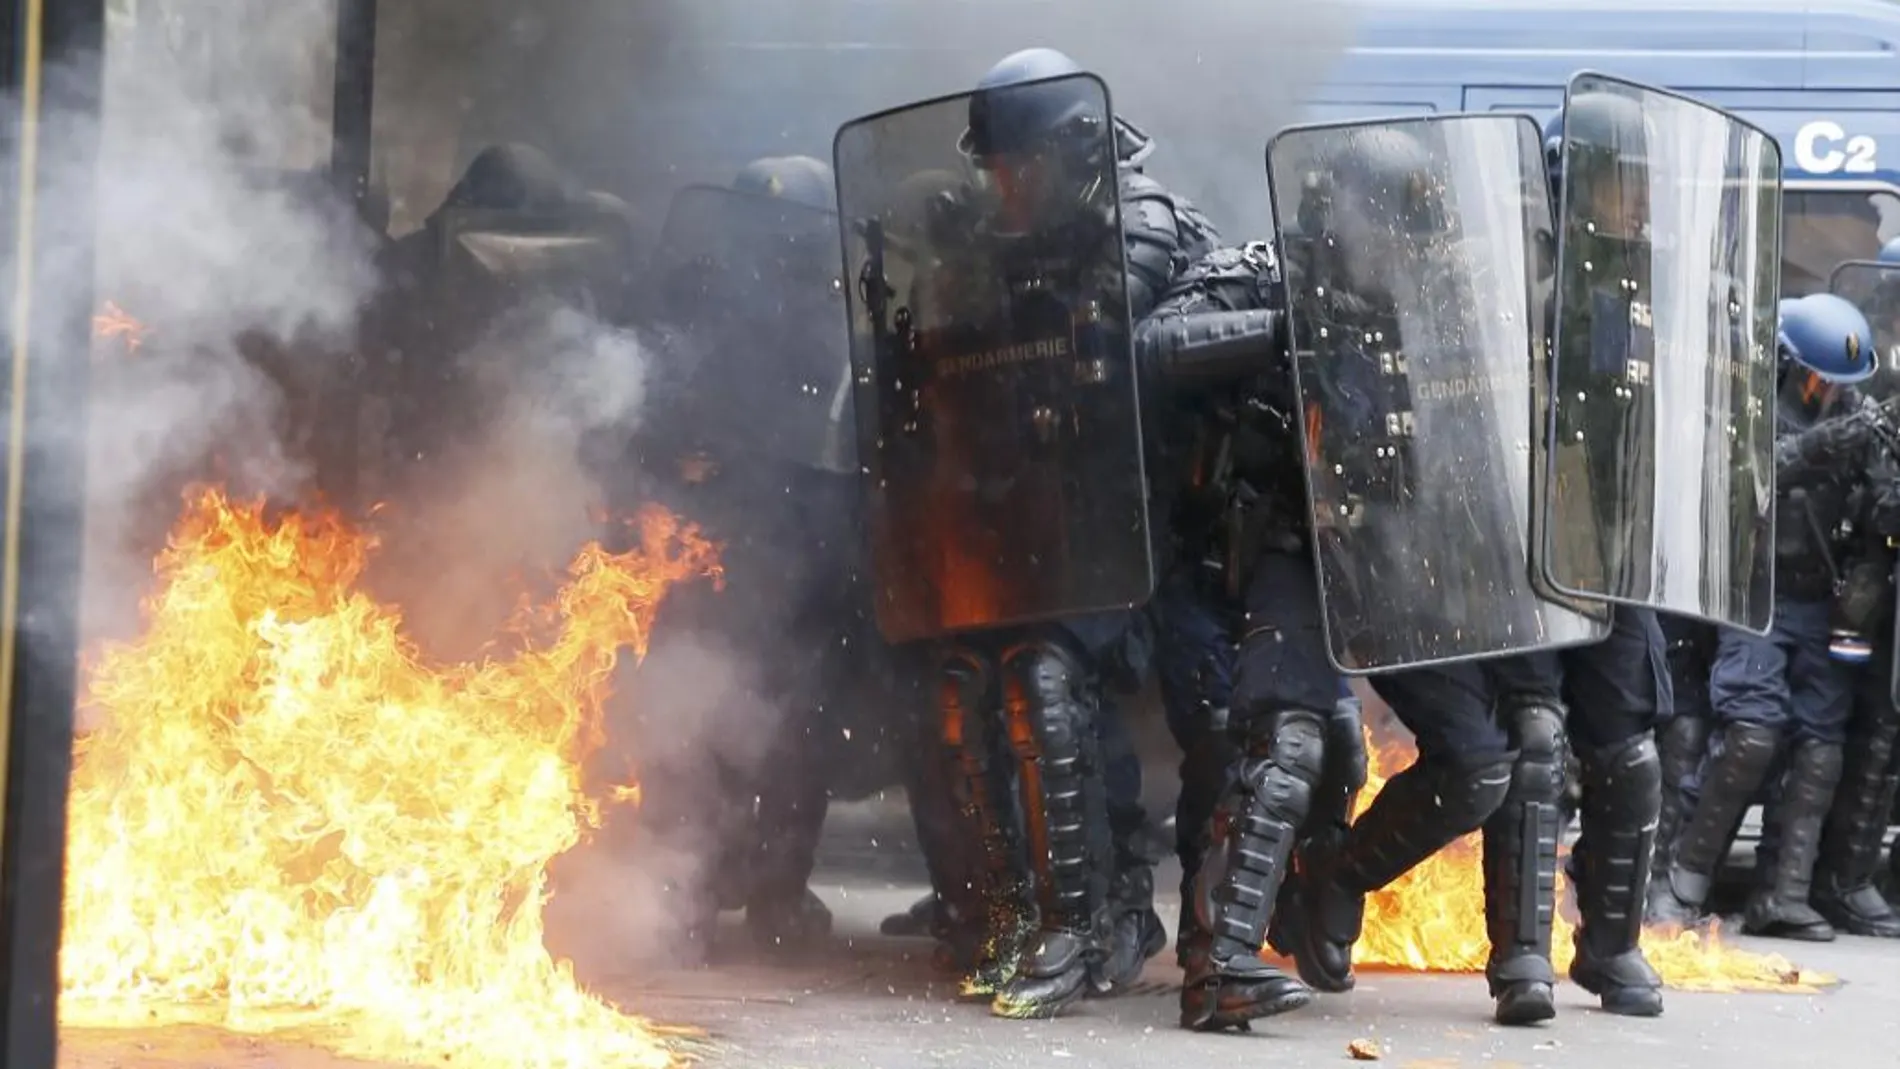 Agentes antidisturbios de la Gendarmería francesa atacados con un coctel molotov durante los disturbios